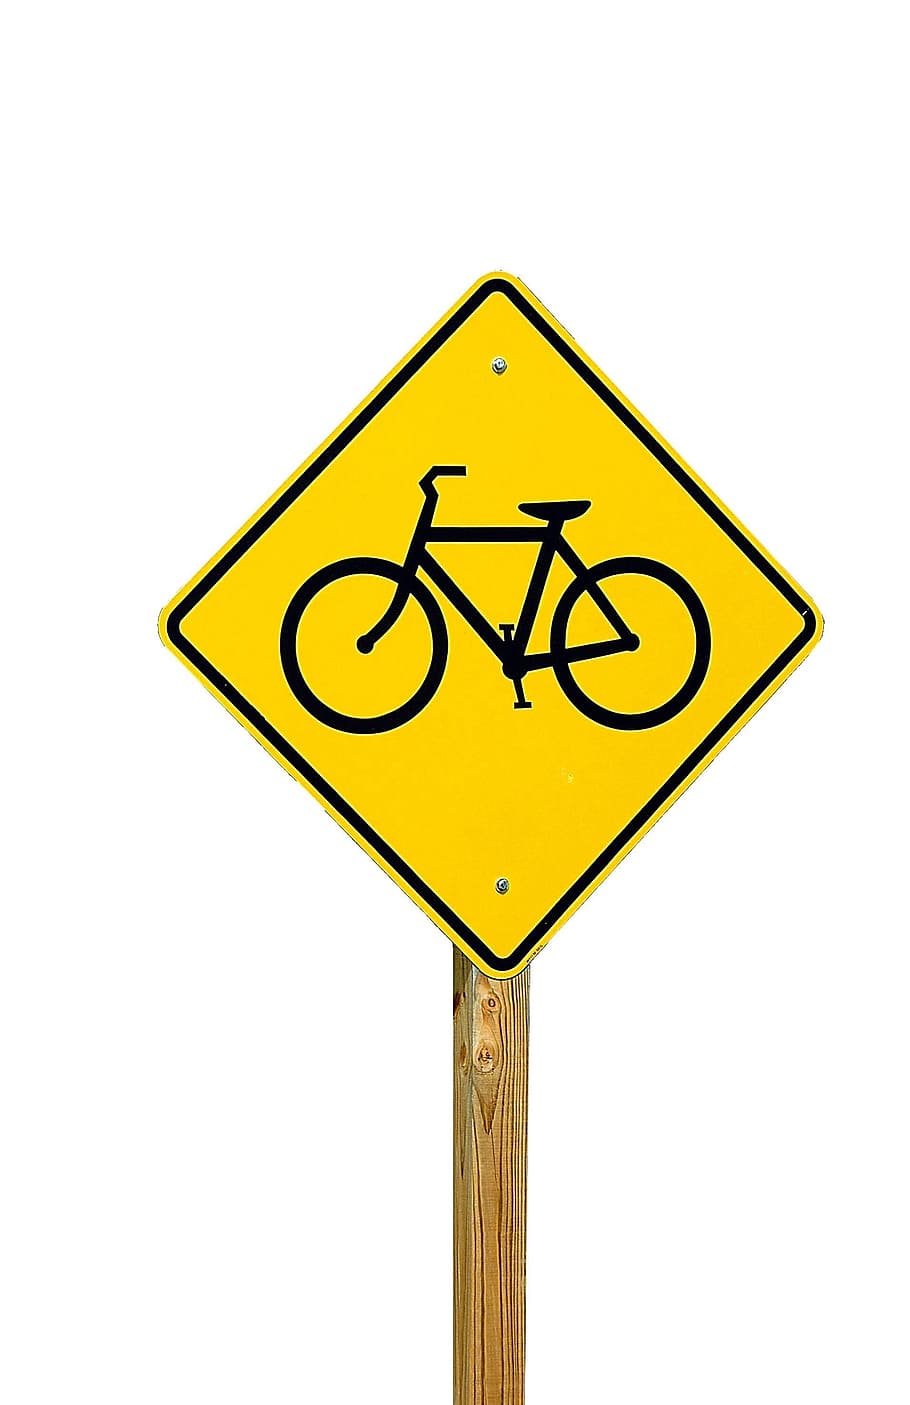 warning, traffic, danger, safety, bike, bicycle, road, sign, street, transportation